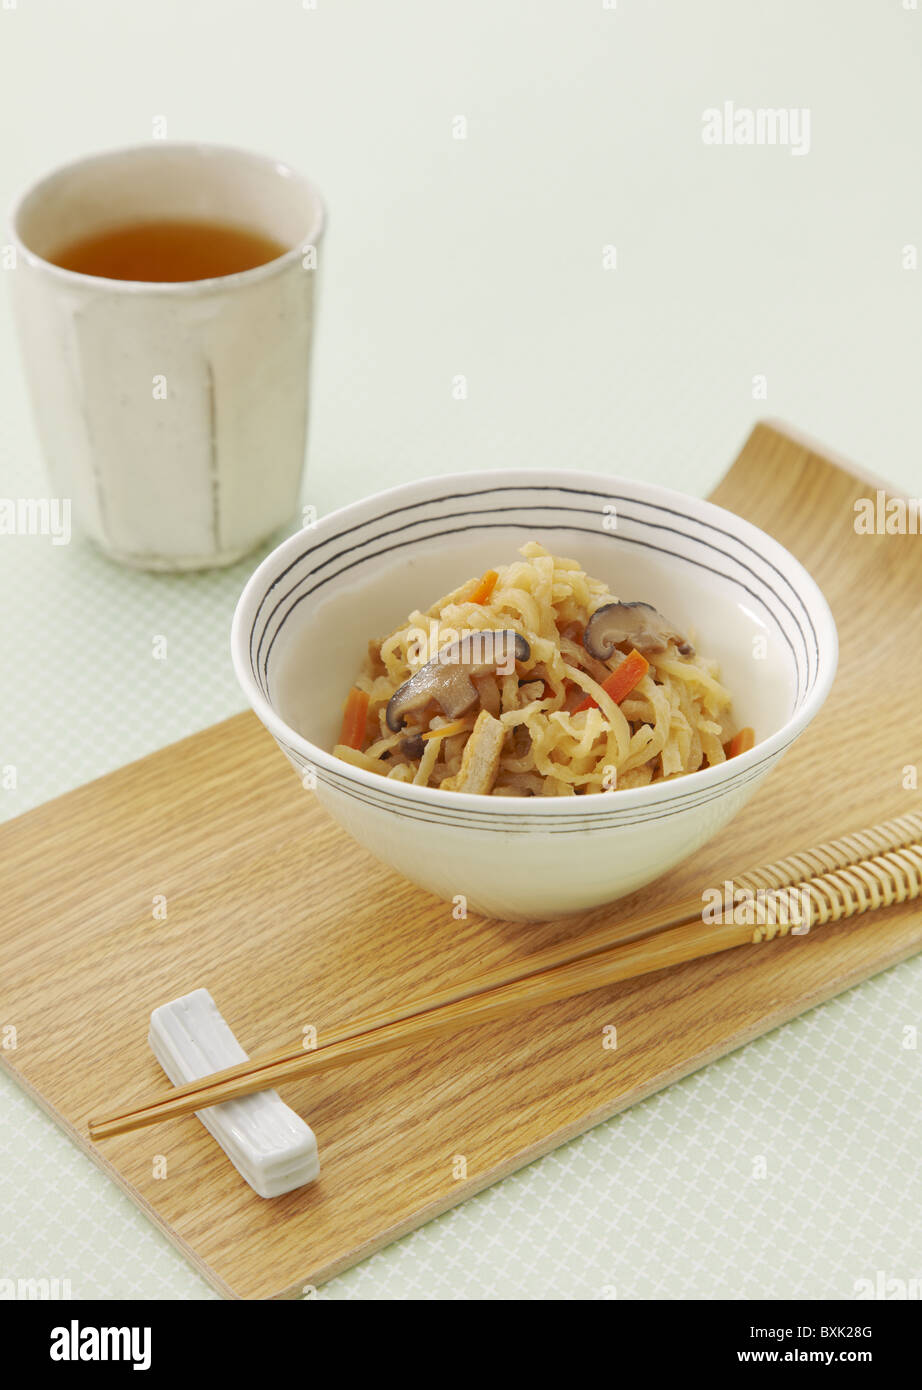 Séché et râpé radis daikon mitonnées dans une sauce au soja Banque D'Images